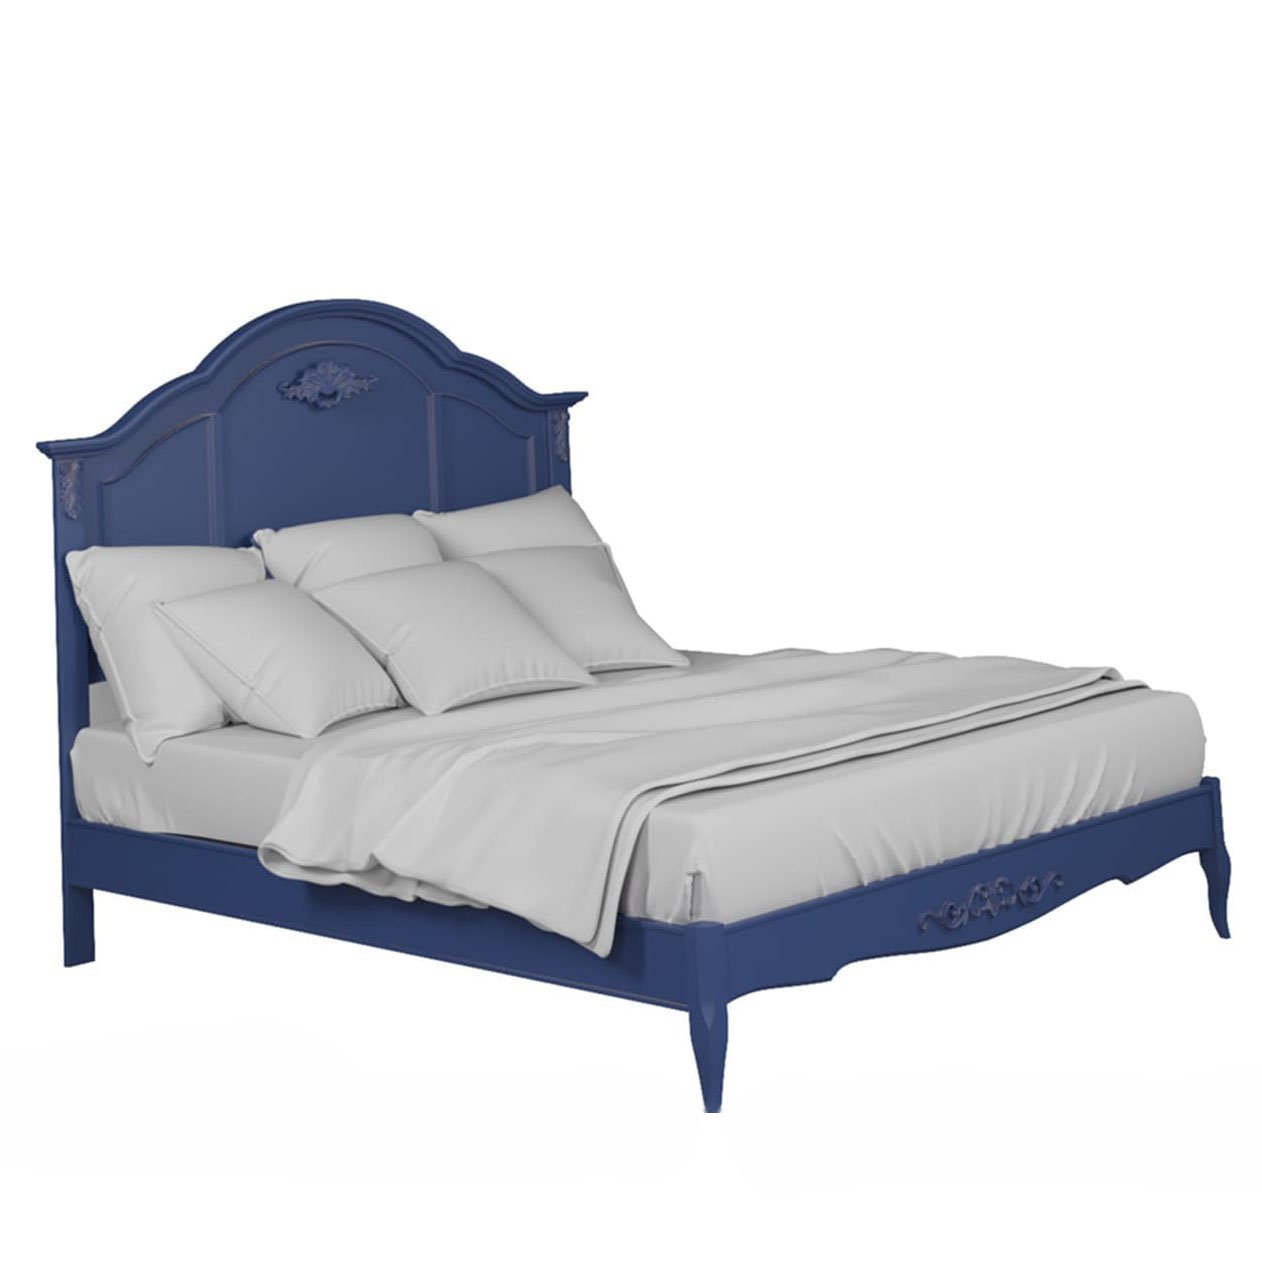 Кровать Aletan Provence, двуспальная, 180x200 см, цвет: синий (B208IN)B208IN